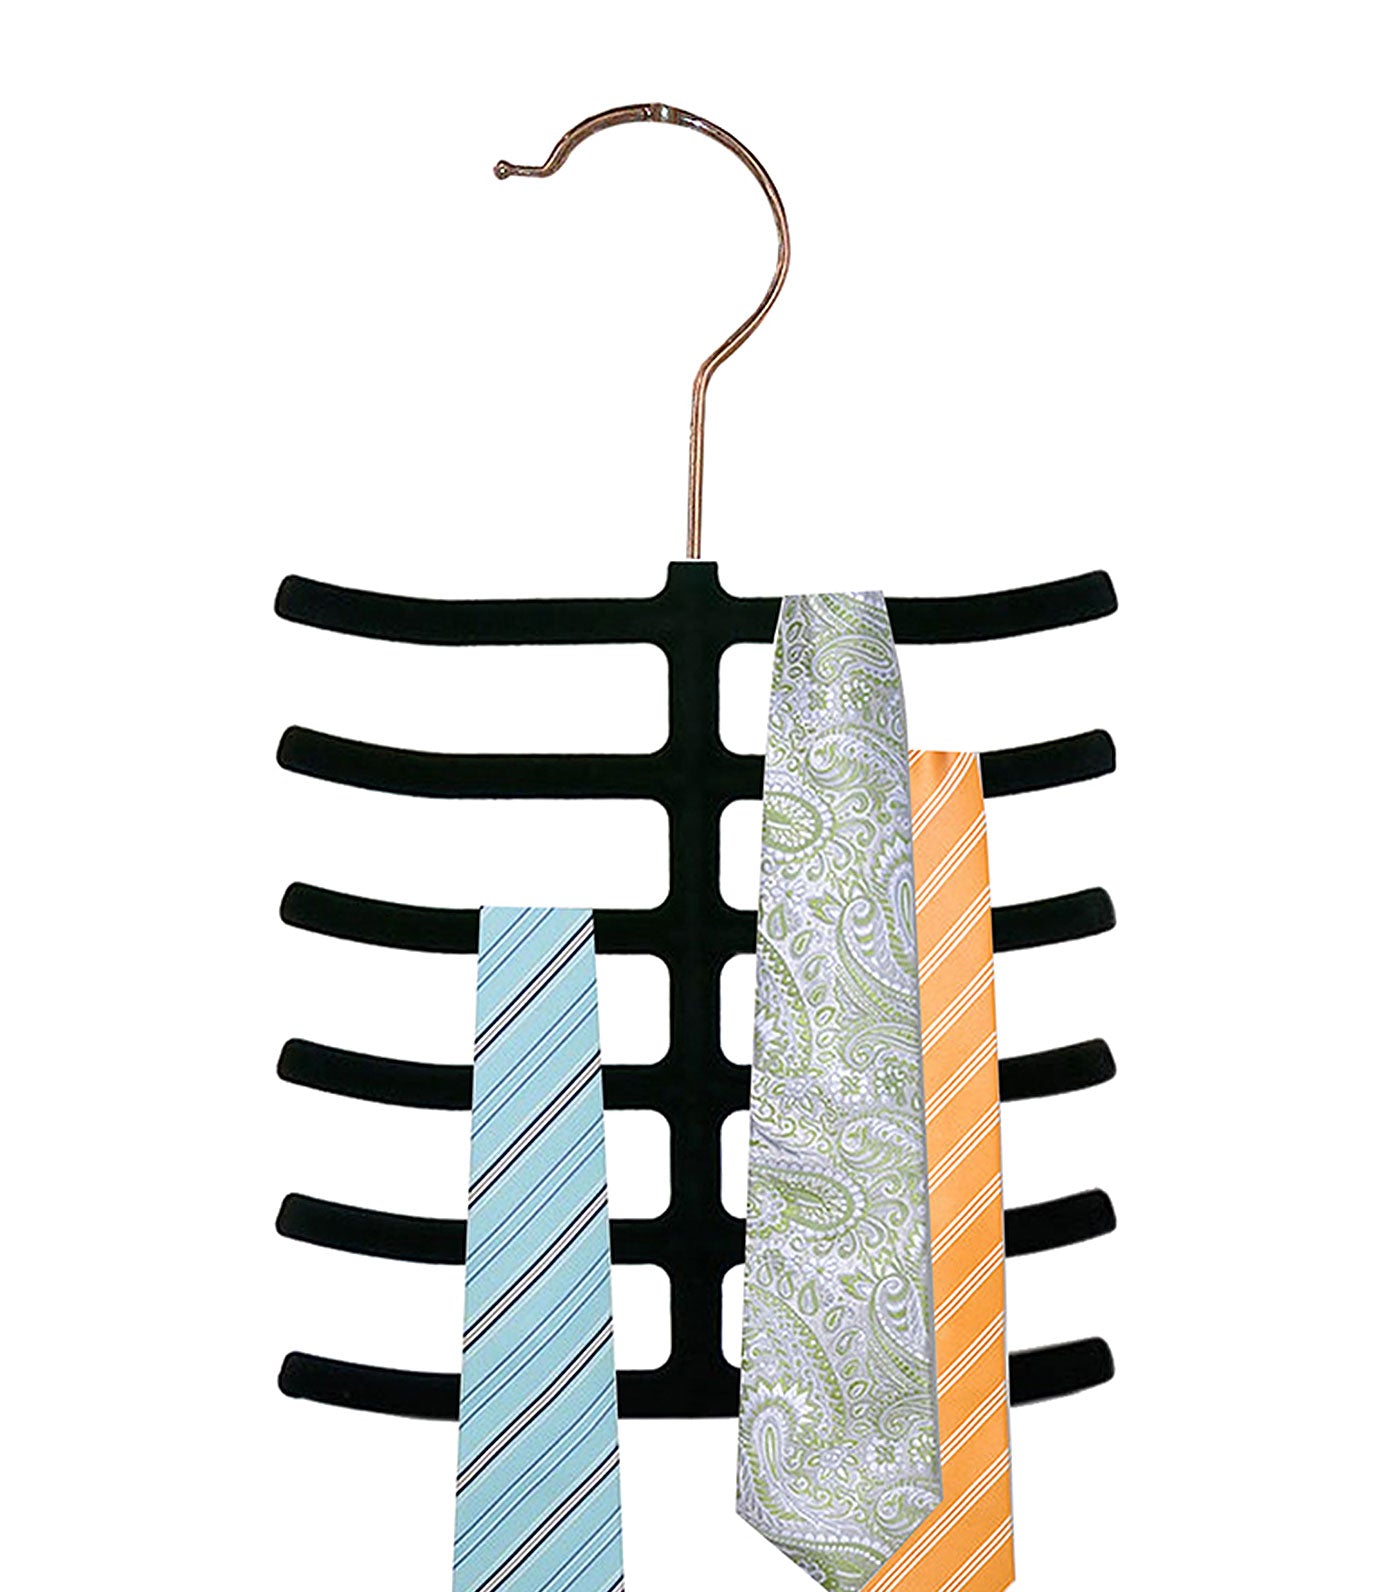  MakeRoom 6-Tier Non-Slip Velvet Tie Hanger